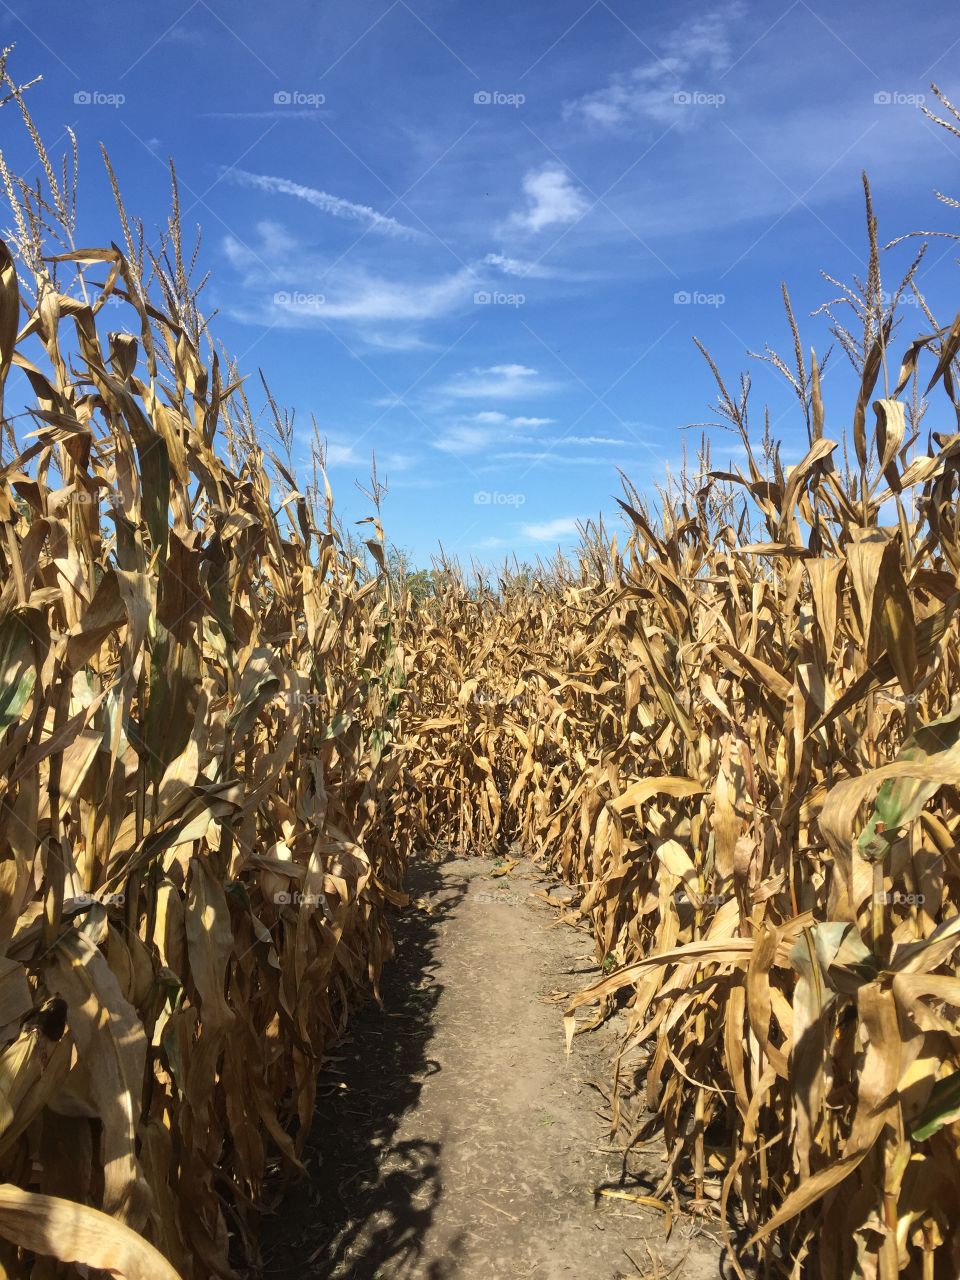 Fall cornmaze in Indiana